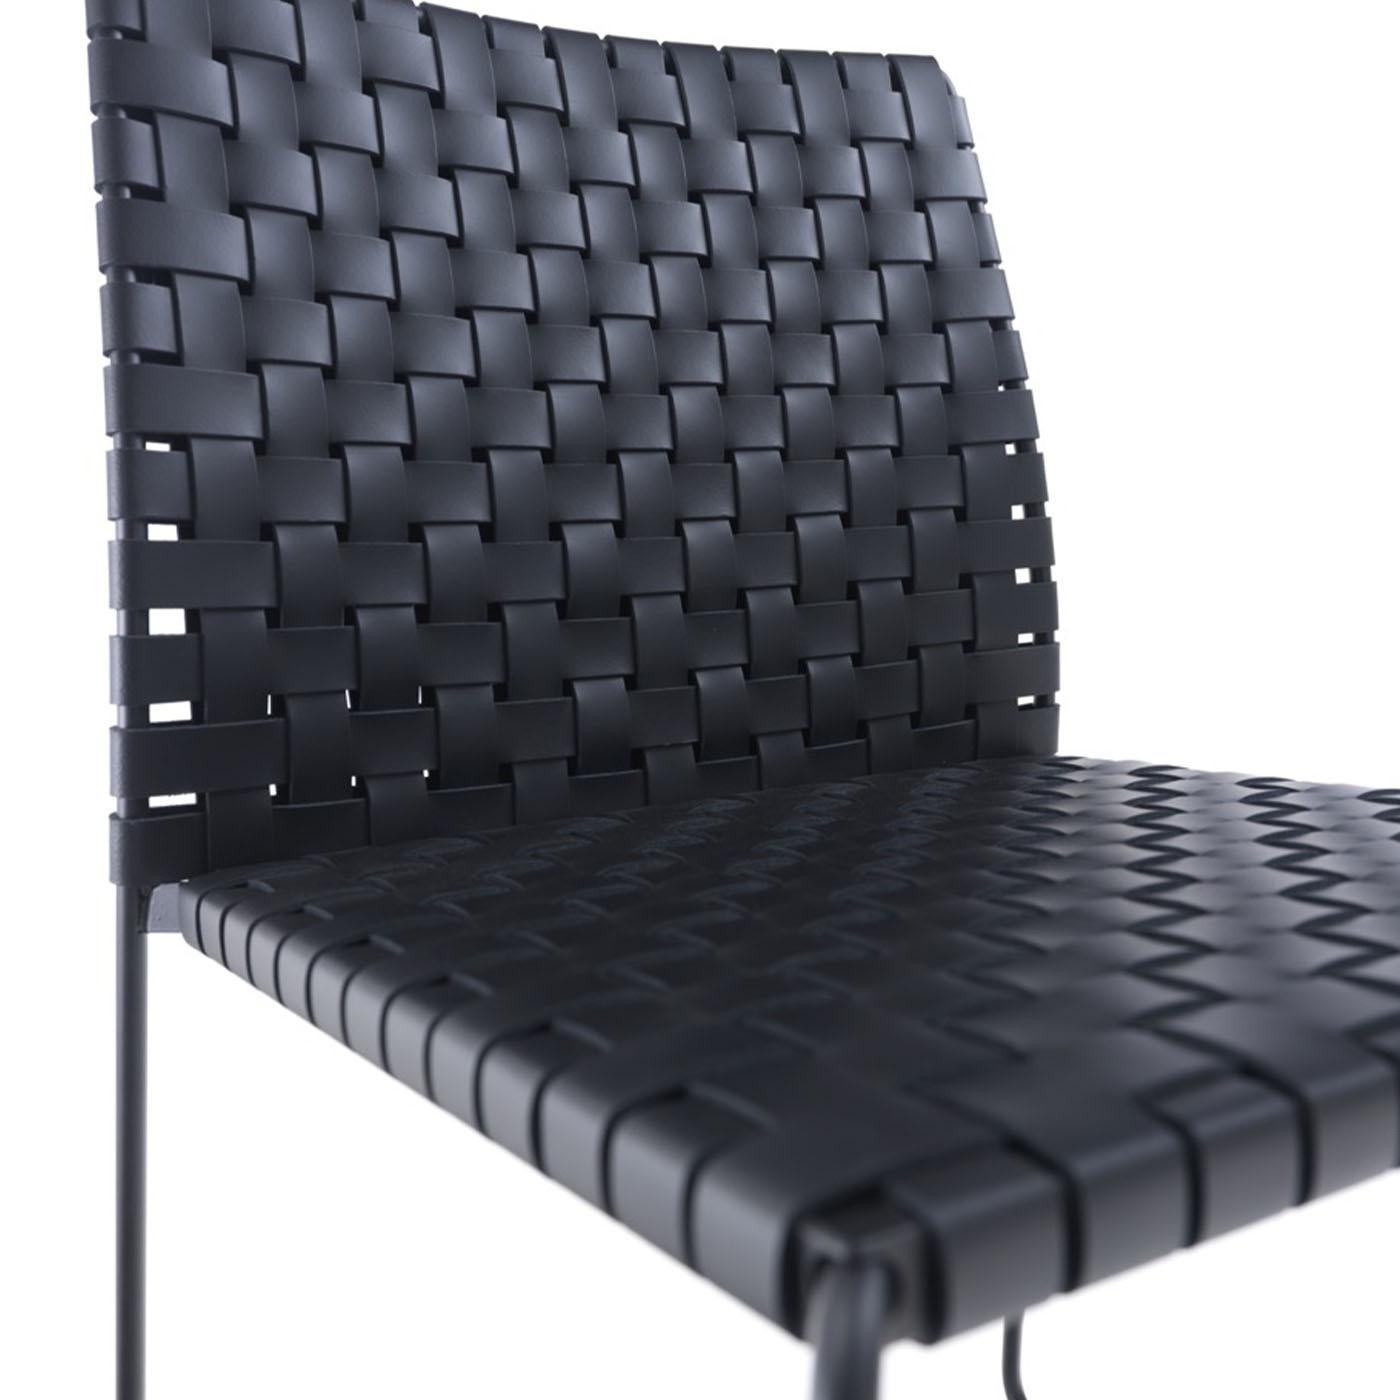 Charakteristisch für den Stuhl Bizzy sind die intelligente Kombination von MATERIALEN und die Form, die sich durch klare Linien und ein klares Design auszeichnet. Die Serie Bizzy besteht aus einem Stahlrahmen mit rundem Querschnitt und einem